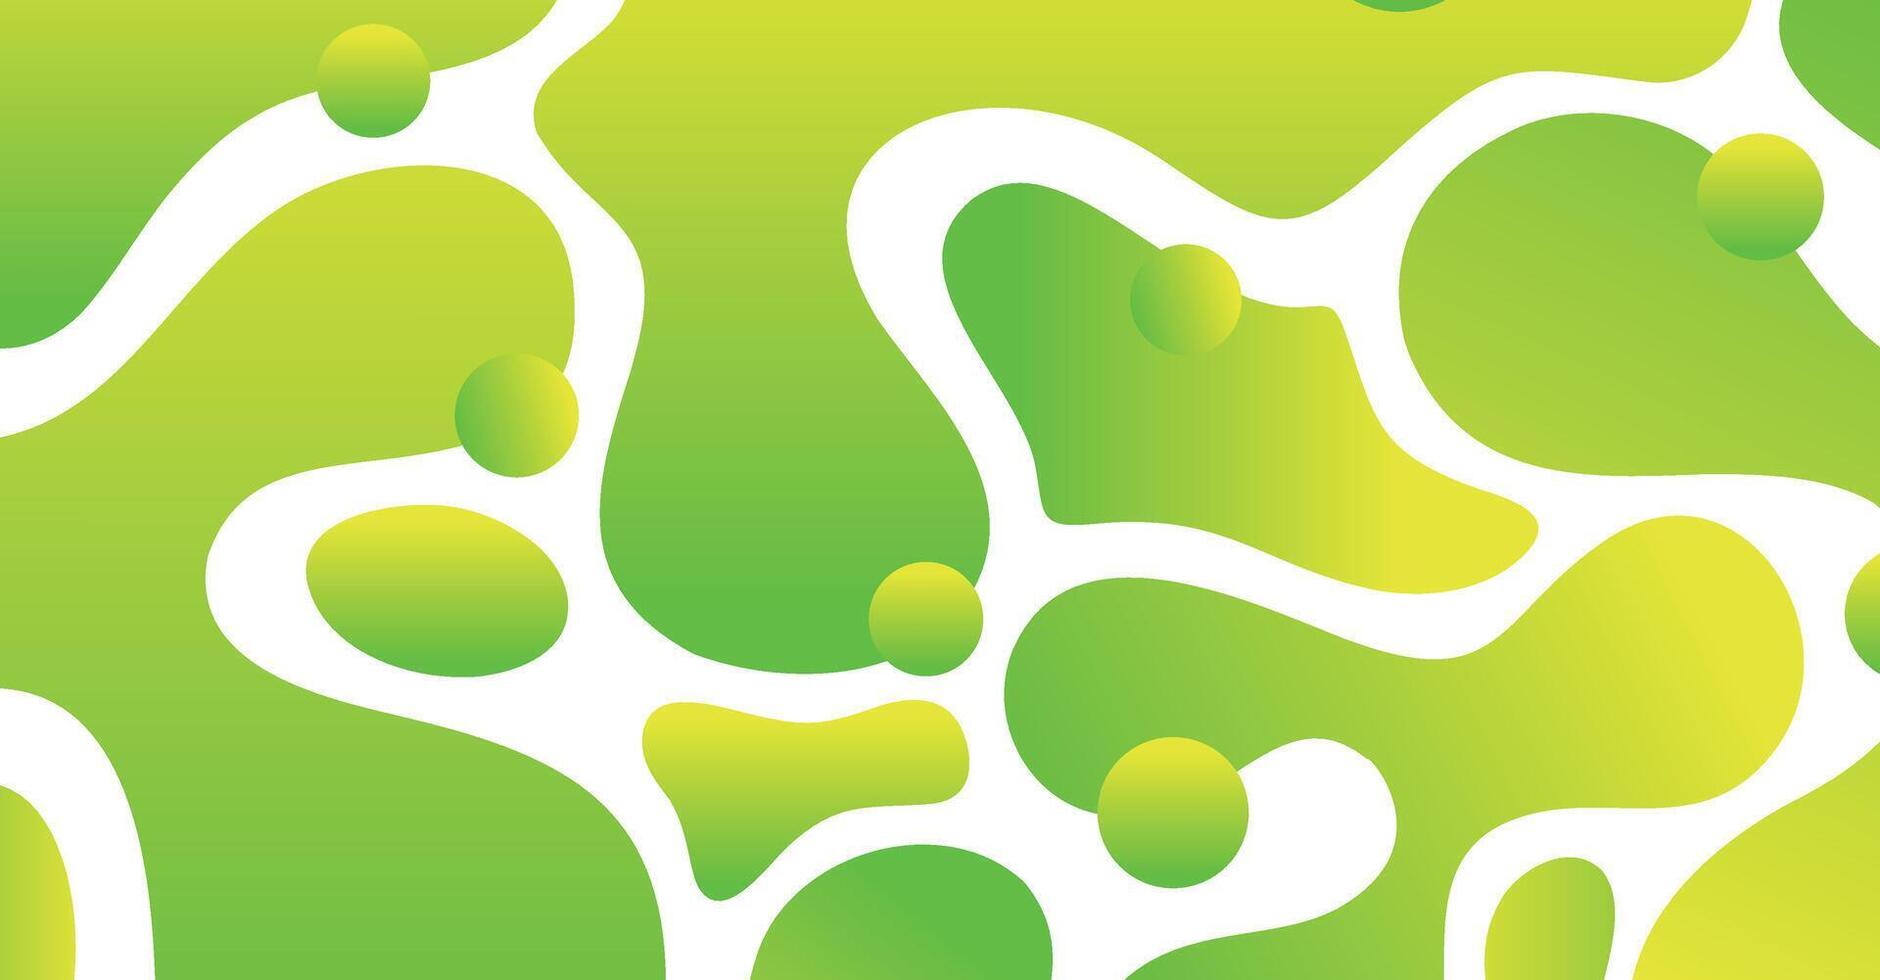 abstract vloeistof Golf met kleurrijk achtergrond vector